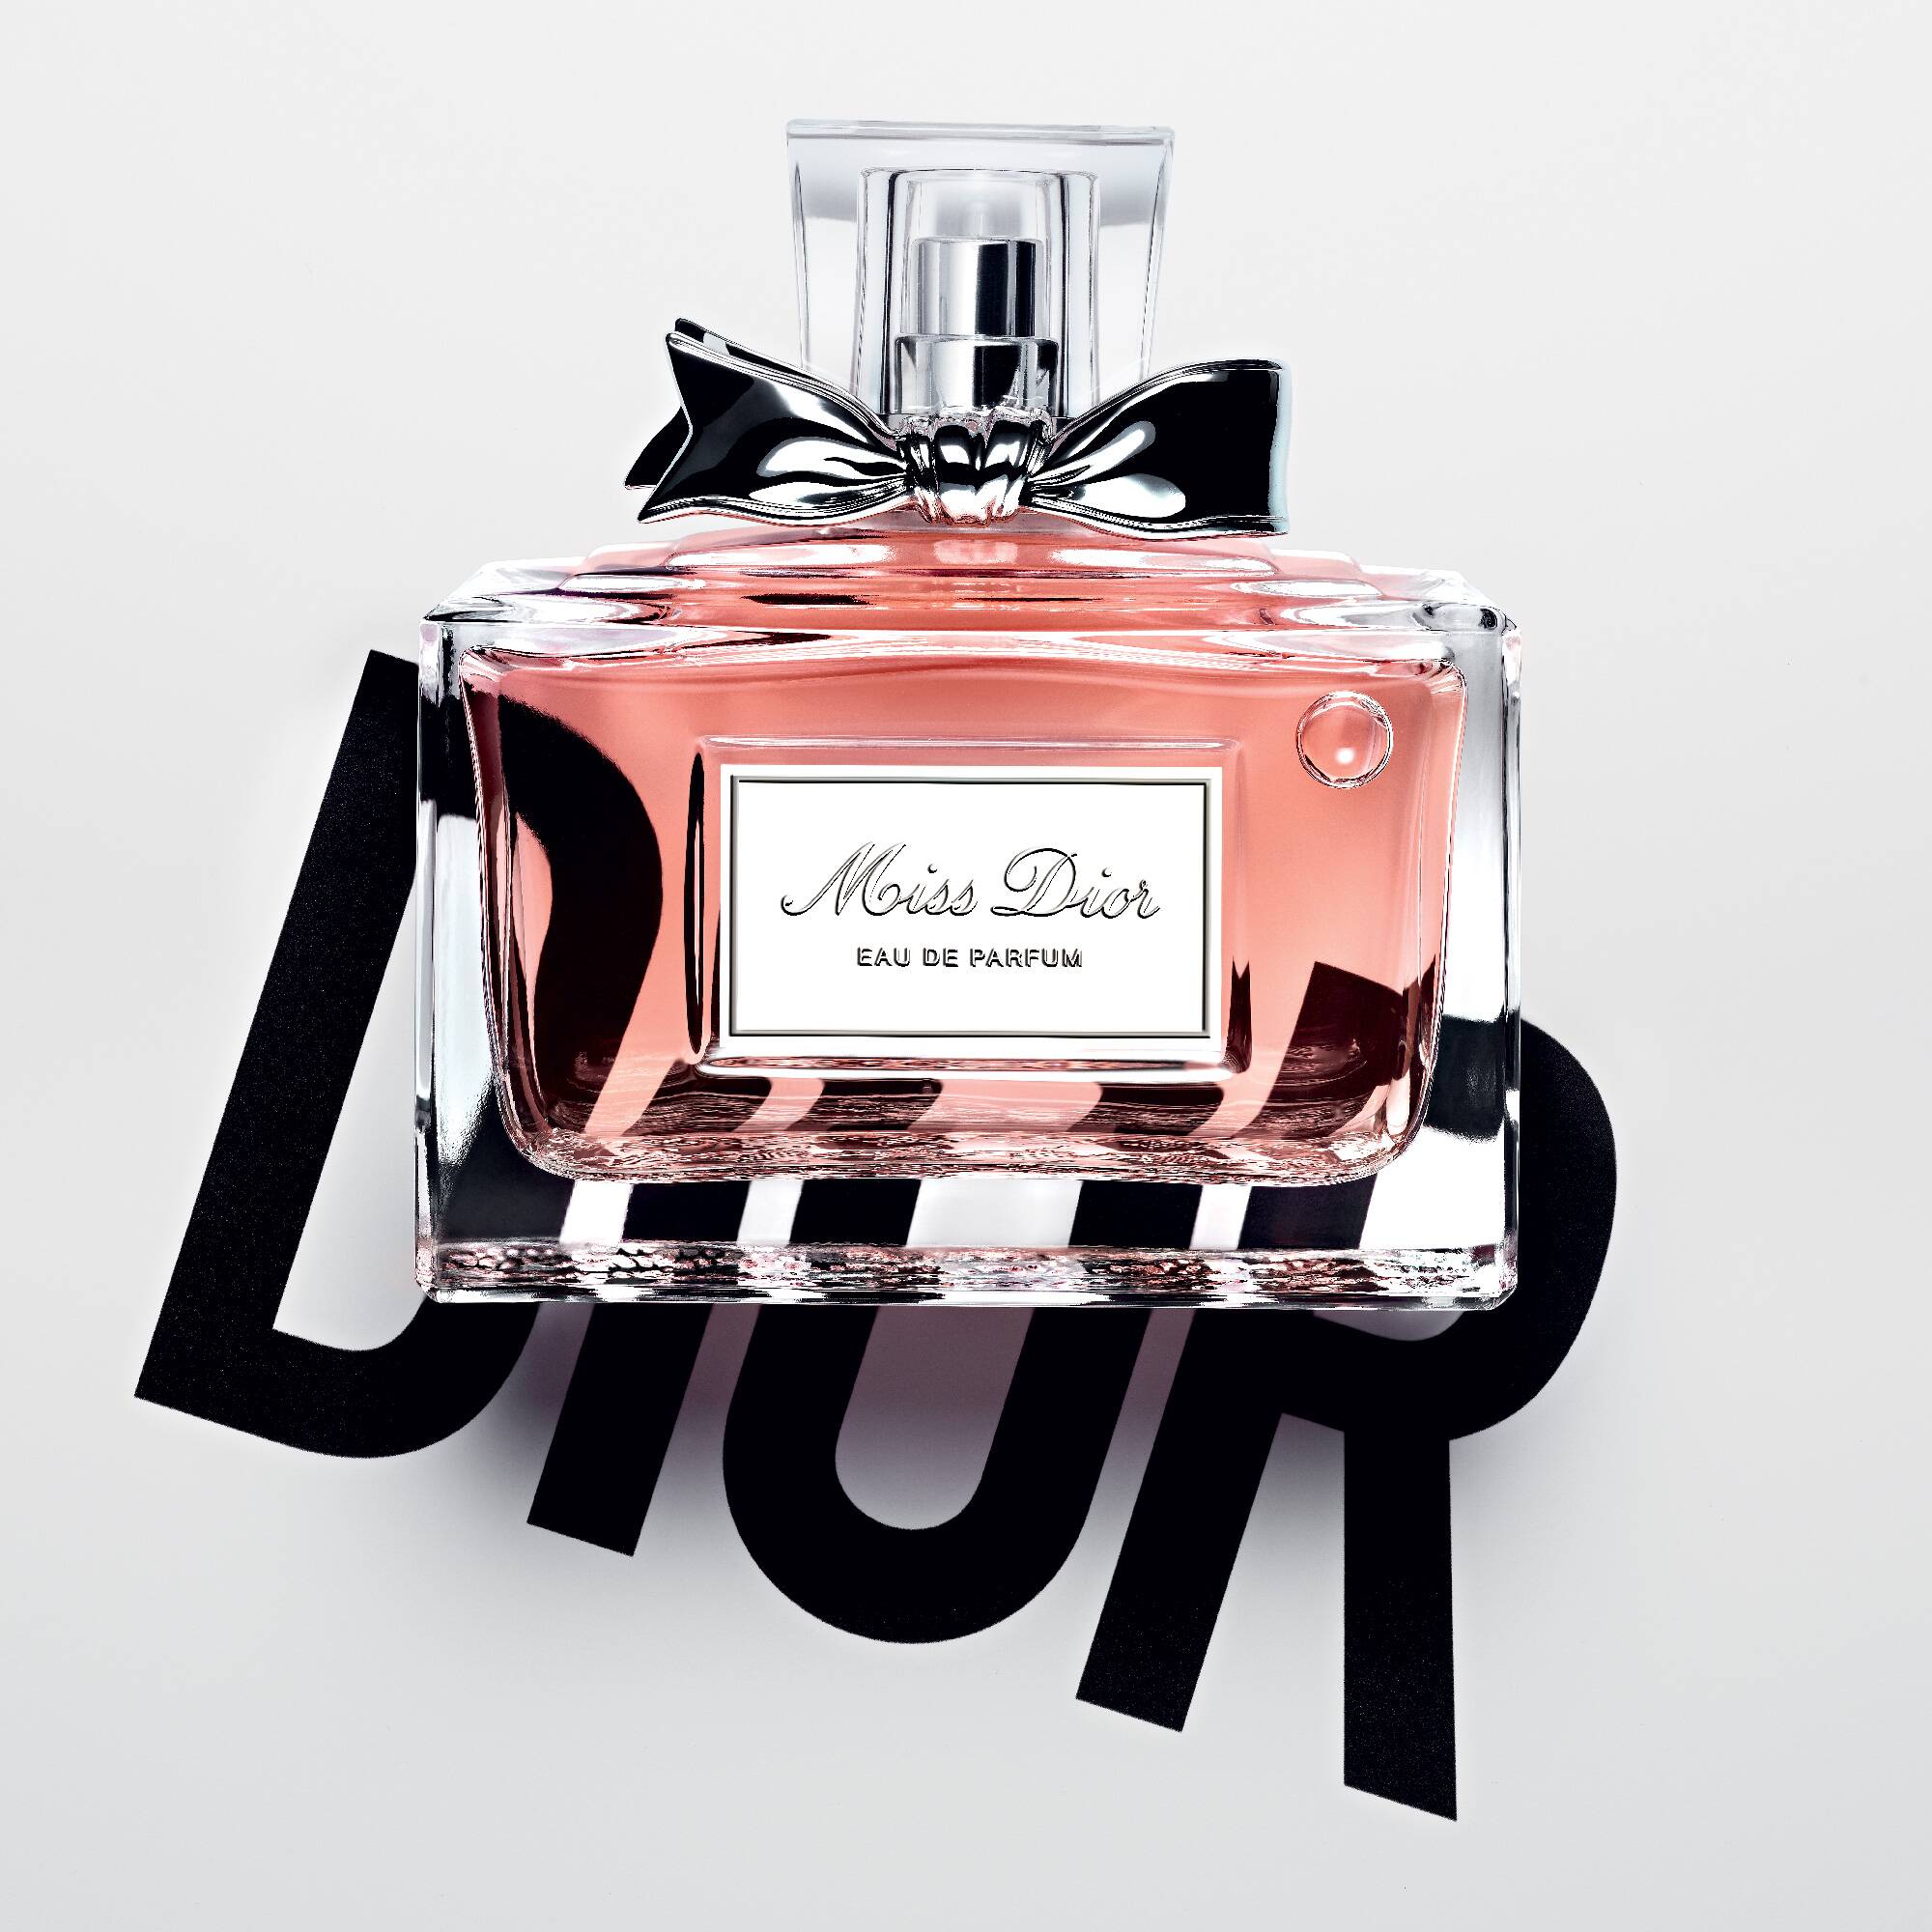 New Miss de Parfum campaign with Natalie Portman - LVMH